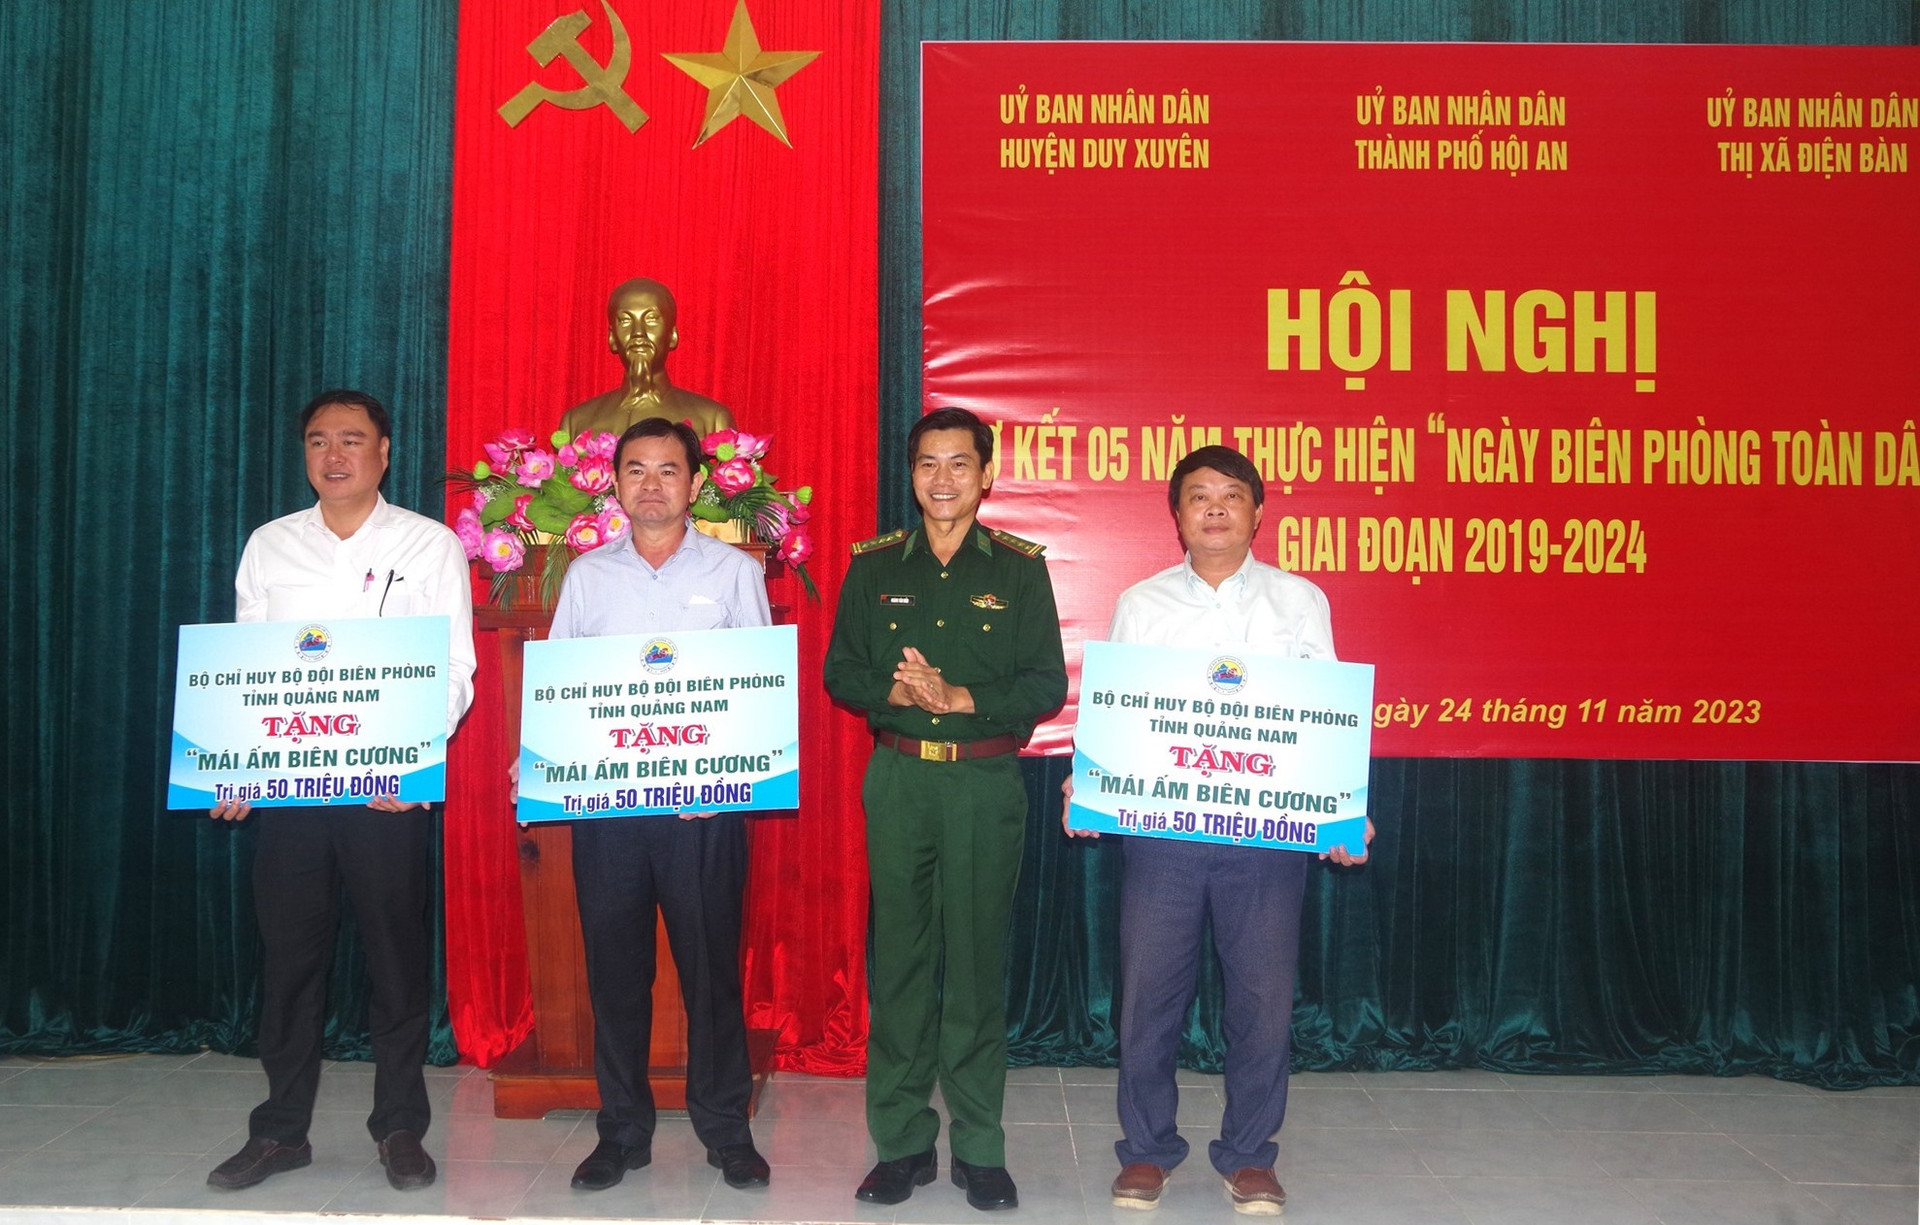 Đại tá Hoàng Văn Mẫn – Chính uỷ BĐBP tỉnh trao bảng tượng trưng tặng “Mái ấm biên cương”. Ảnh: HUỲNH CHÍN